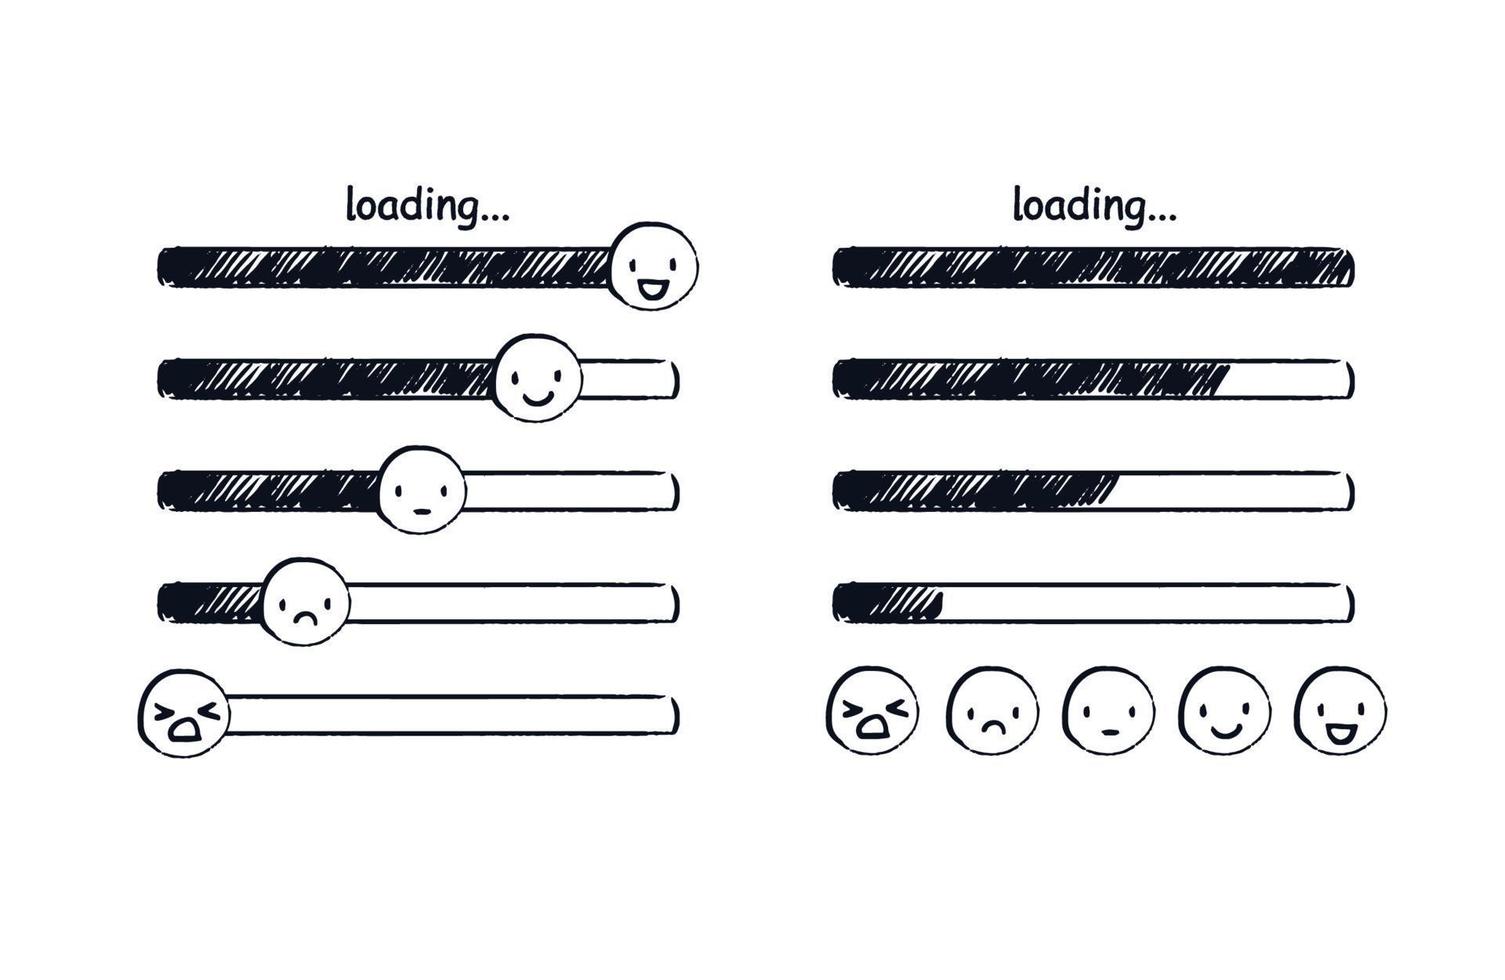 emoji de la barre de chargement. indicateur d'humeur doodle ou émoticônes dessinées à la main allant de triste à heureux. illustration de croquis de vecteur de différents niveaux de chargement d'une page Web.